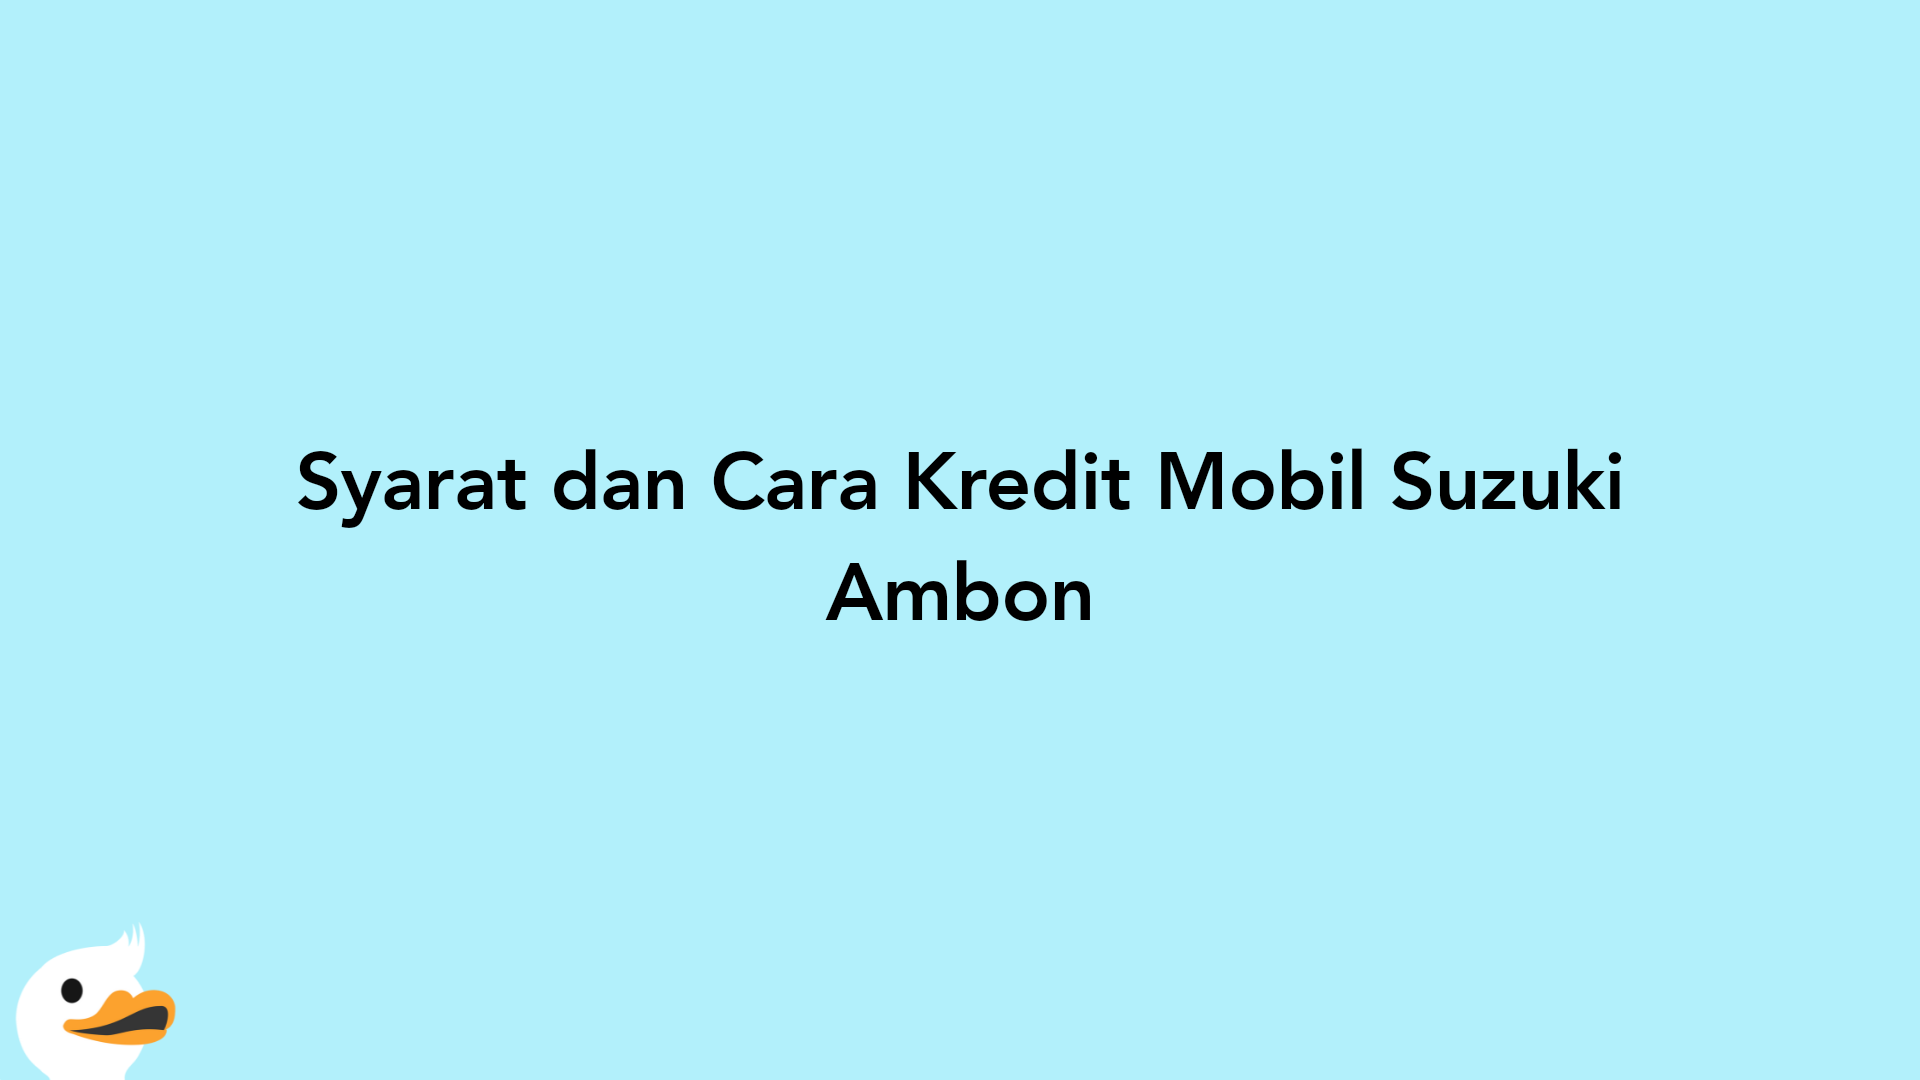 Syarat dan Cara Kredit Mobil Suzuki Ambon